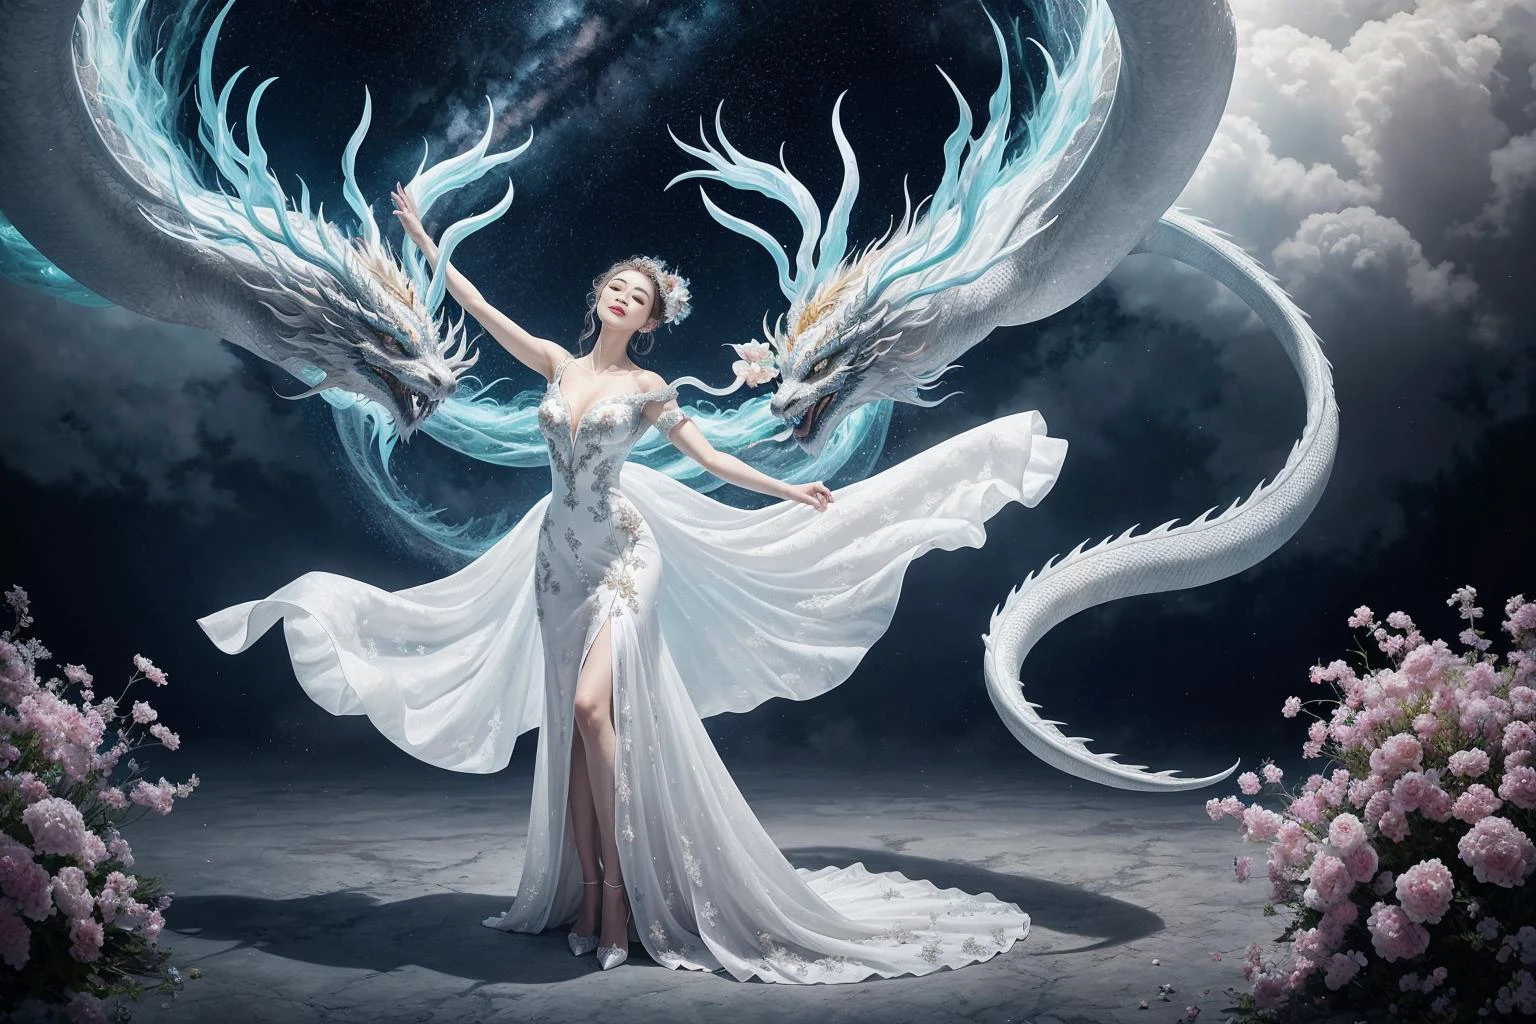 In einem fesselnden Bild, eine elegante Frau in einem weißen chinesischen Kleid gleitet auf einem mythischen chinesischen Drachen durch den Himmel. Während sie den Himmel durchqueren, Ihr fließendes Kleid und die schillernden Schuppen des Drachen schaffen eine hypnotisierende Vision von Harmonie und überirdischer Schönheit.
HDR, (Fotorealismus, Meisterhafte Qualität, beste Qualität), pureerosface_V1,ulzzang-6500-V1.1